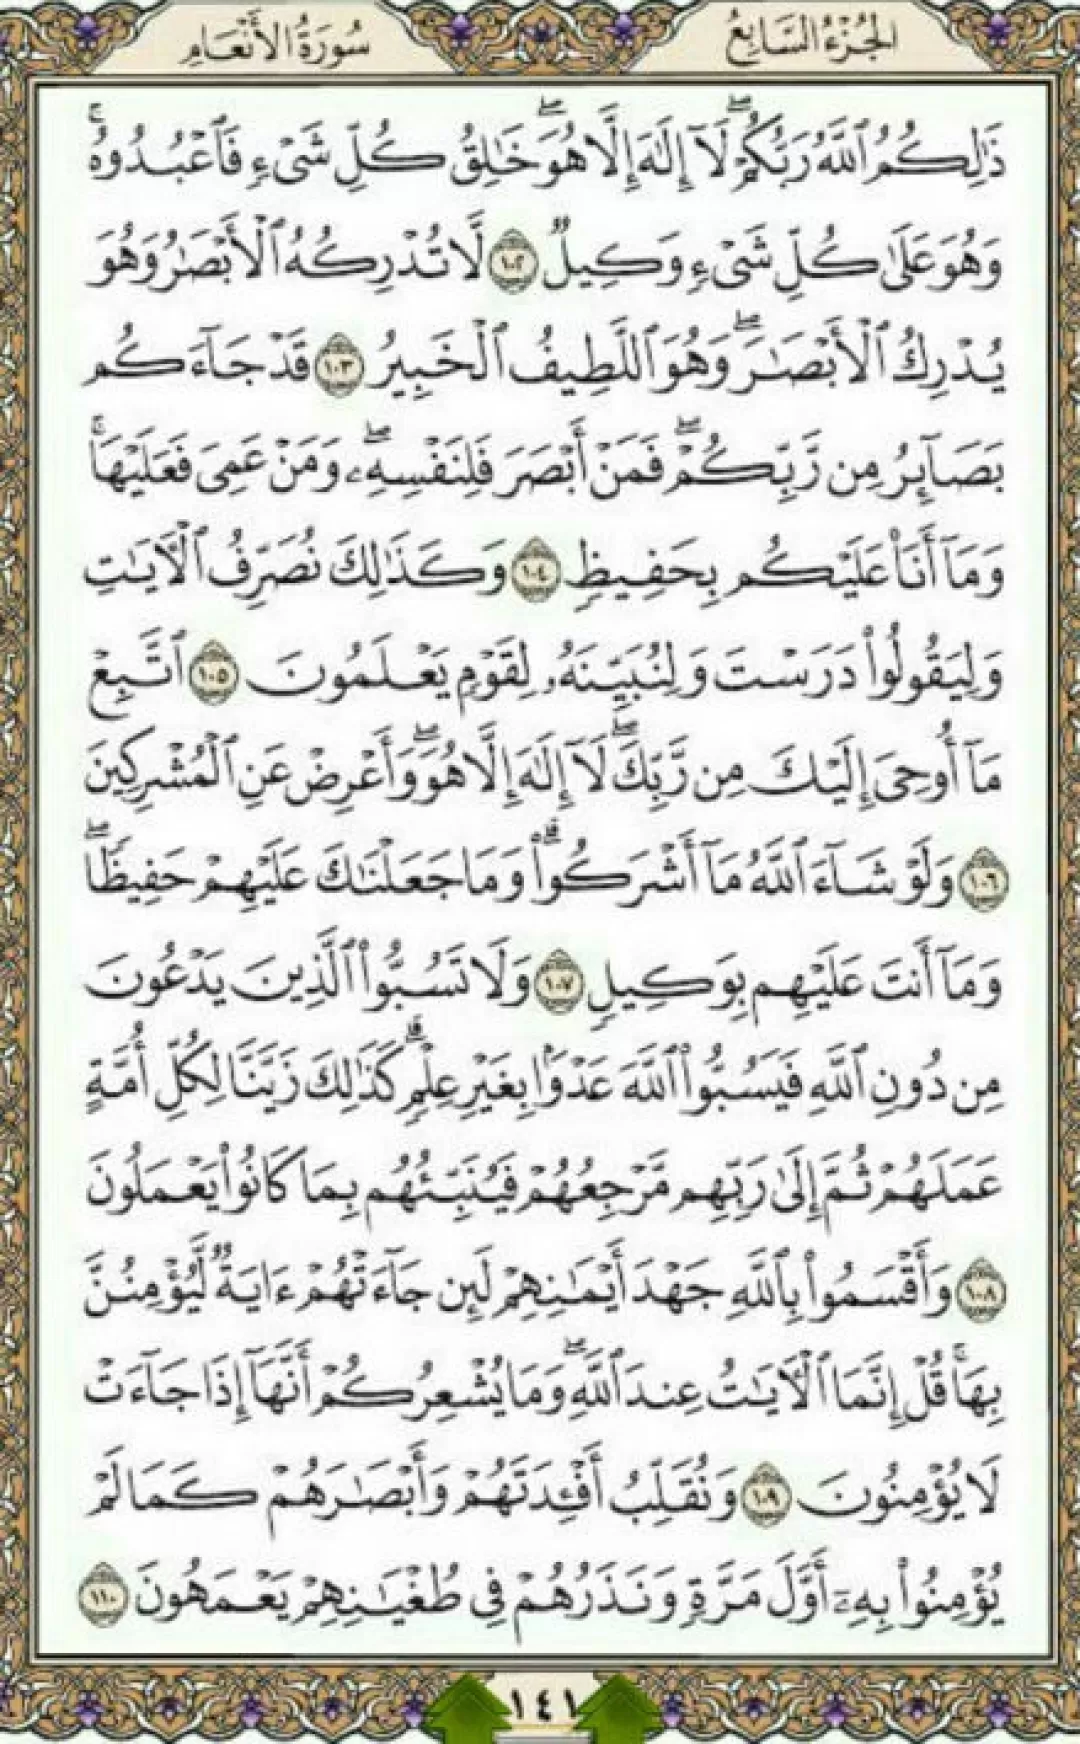 یک صفحه با انوار الهی قرآن مجید